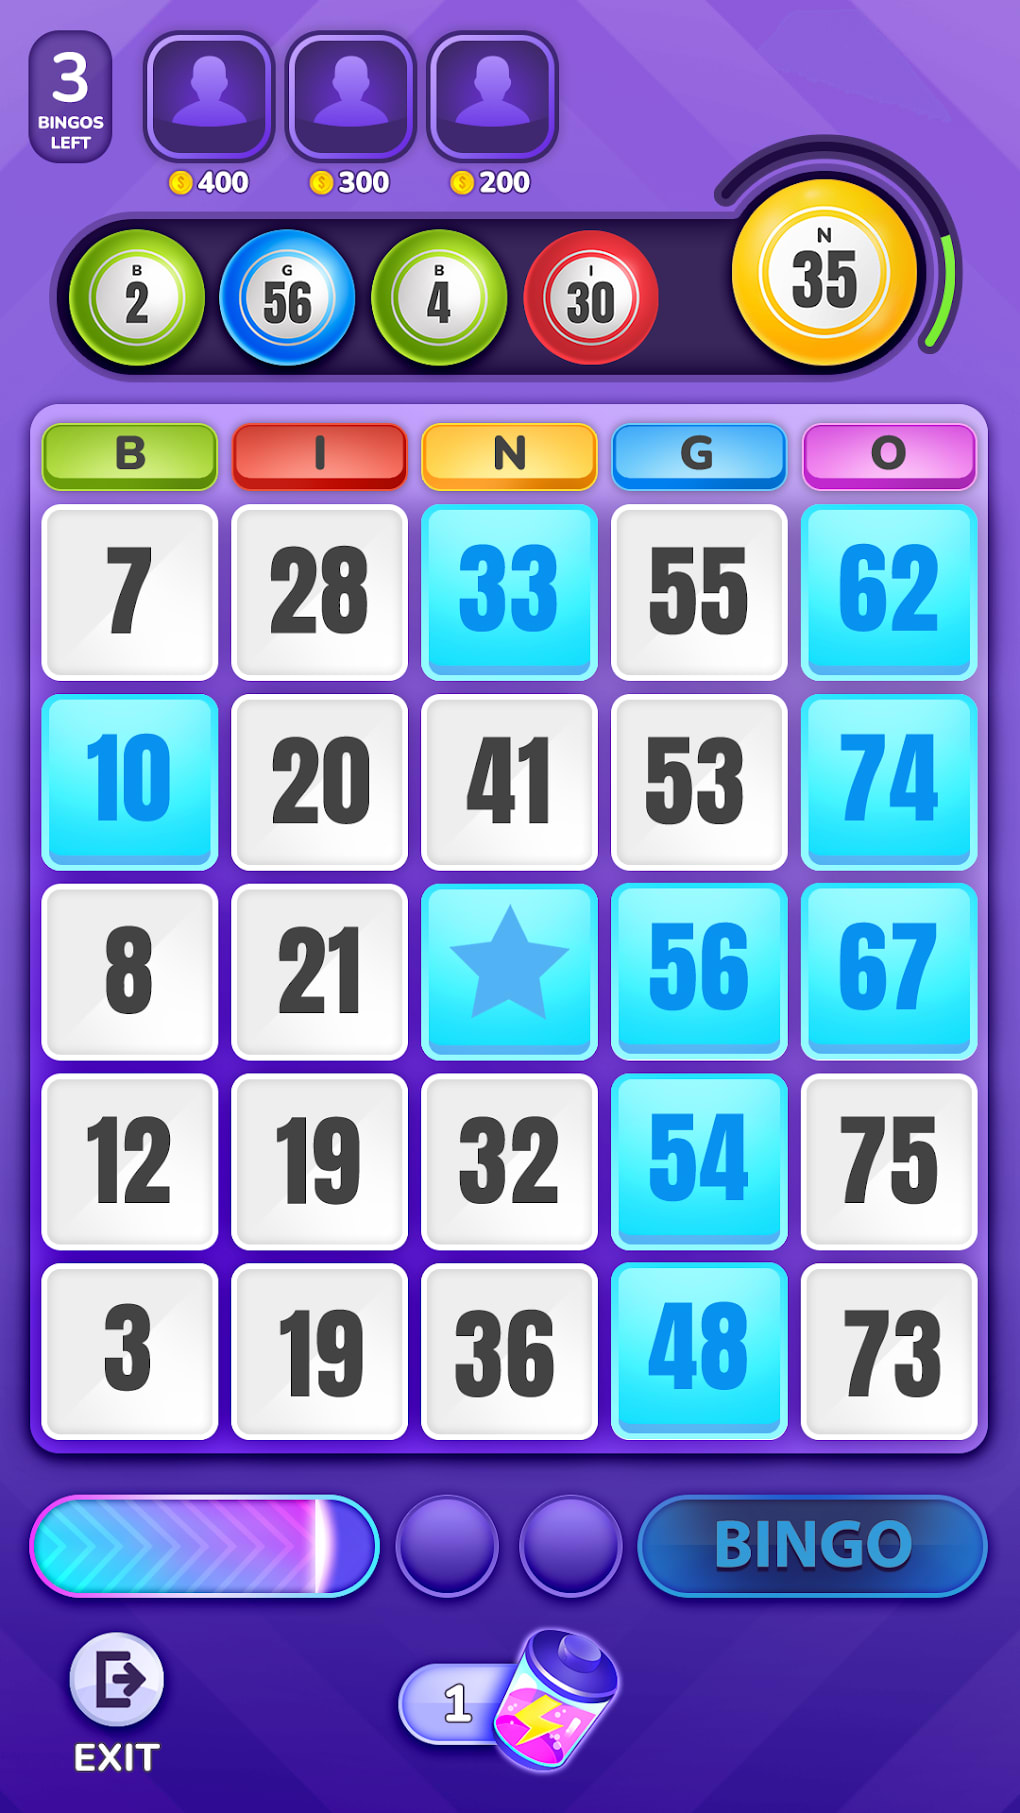 Sistema de Bingo Multijugador